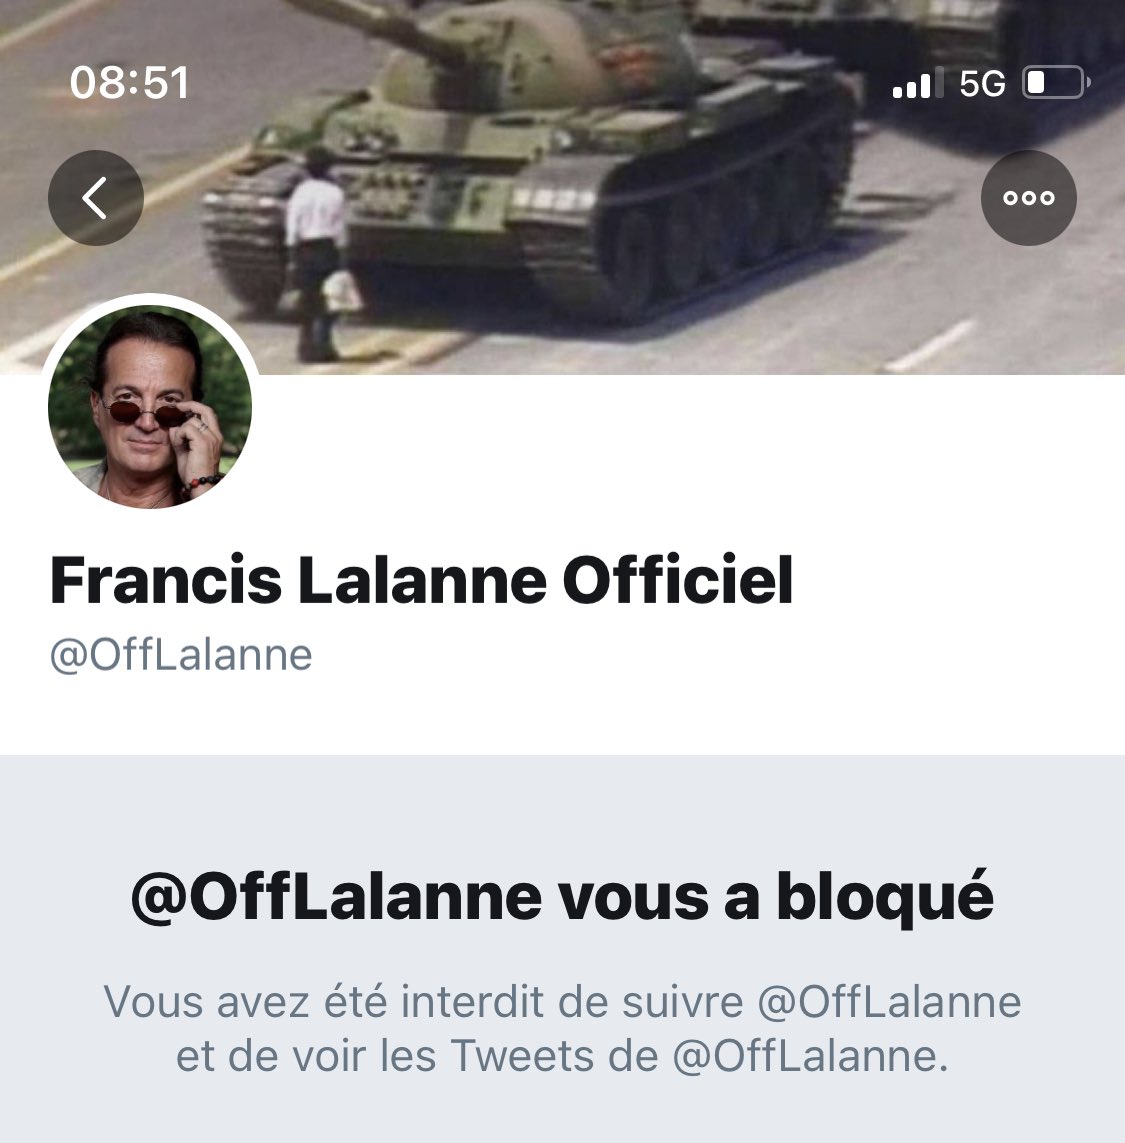 Francis Lalanne n’est pas un complotiste, mais il a bloqué préventivement tous les comptes Twitter qui pouvaient relever ses mensonges : debunkers, fact-checkers, médecins NoFakeMed...Même sans avoir interagi avec lui :